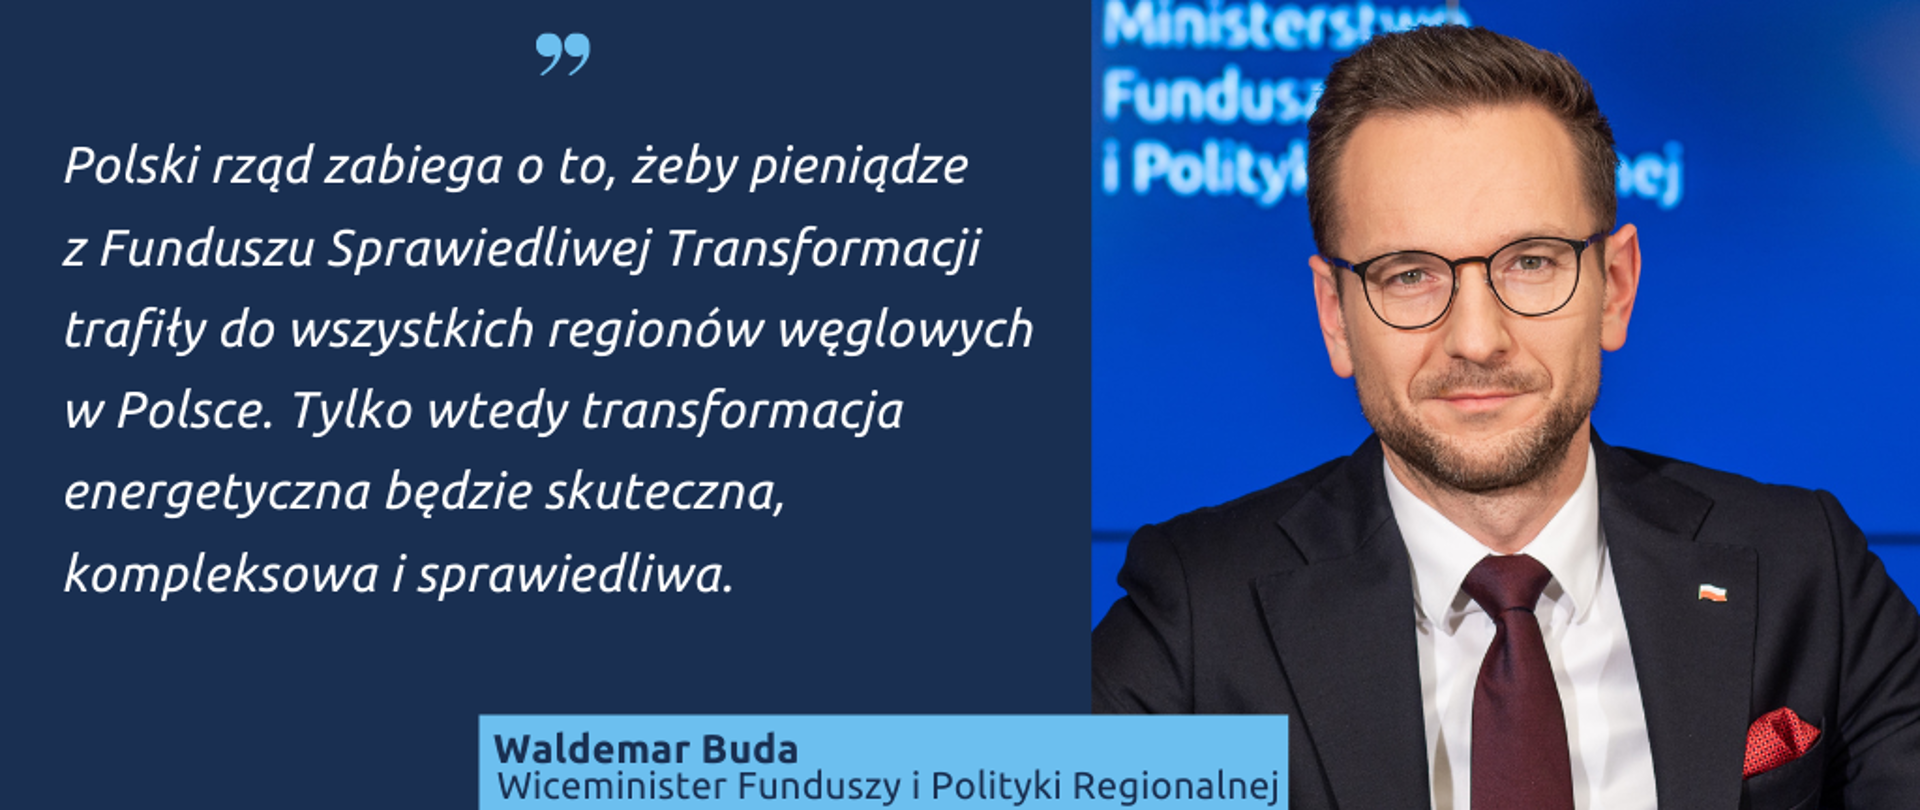 Na grafice wiceminister funduszy i polityki regionalnej Waldemar Buda oraz cytat: "Polski rząd zabiega o to, żeby pieniądze z Funduszu Sprawiedliwej Transformacji trafiły do wszystkich regionów węglowych w Polsce. Tylko wtedy transformacja energetyczna będzie skuteczna, kompleksowa i sprawiedliwa."